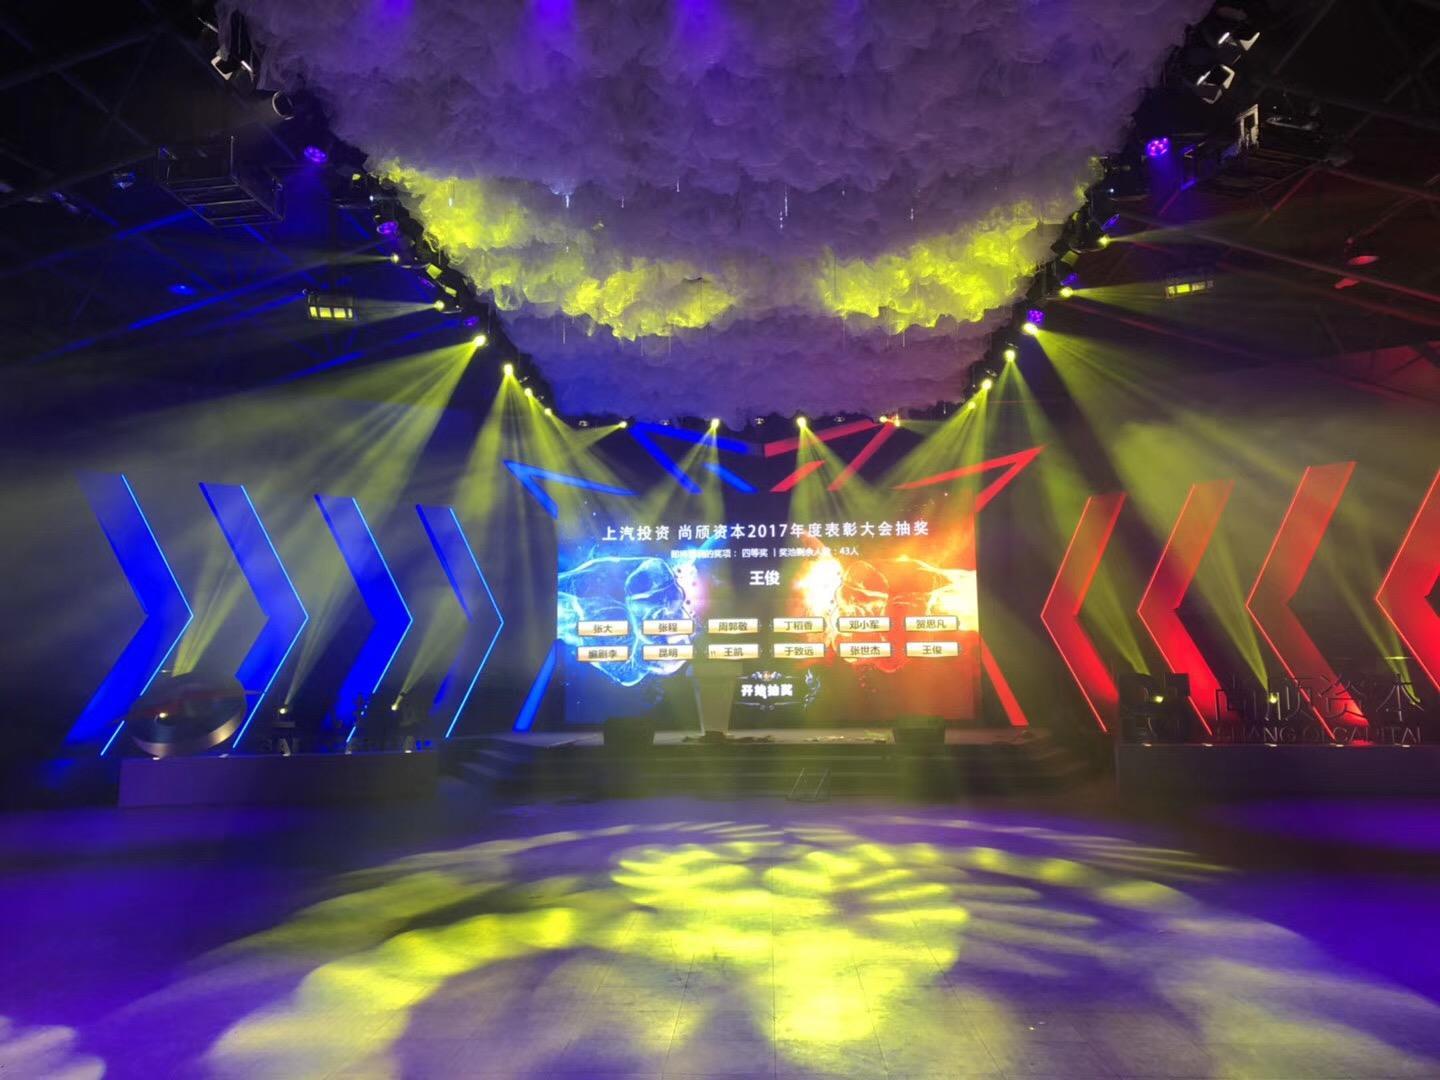 上海大型会议LED大屏幕租赁公司电话 上海束影文化传播有限公司